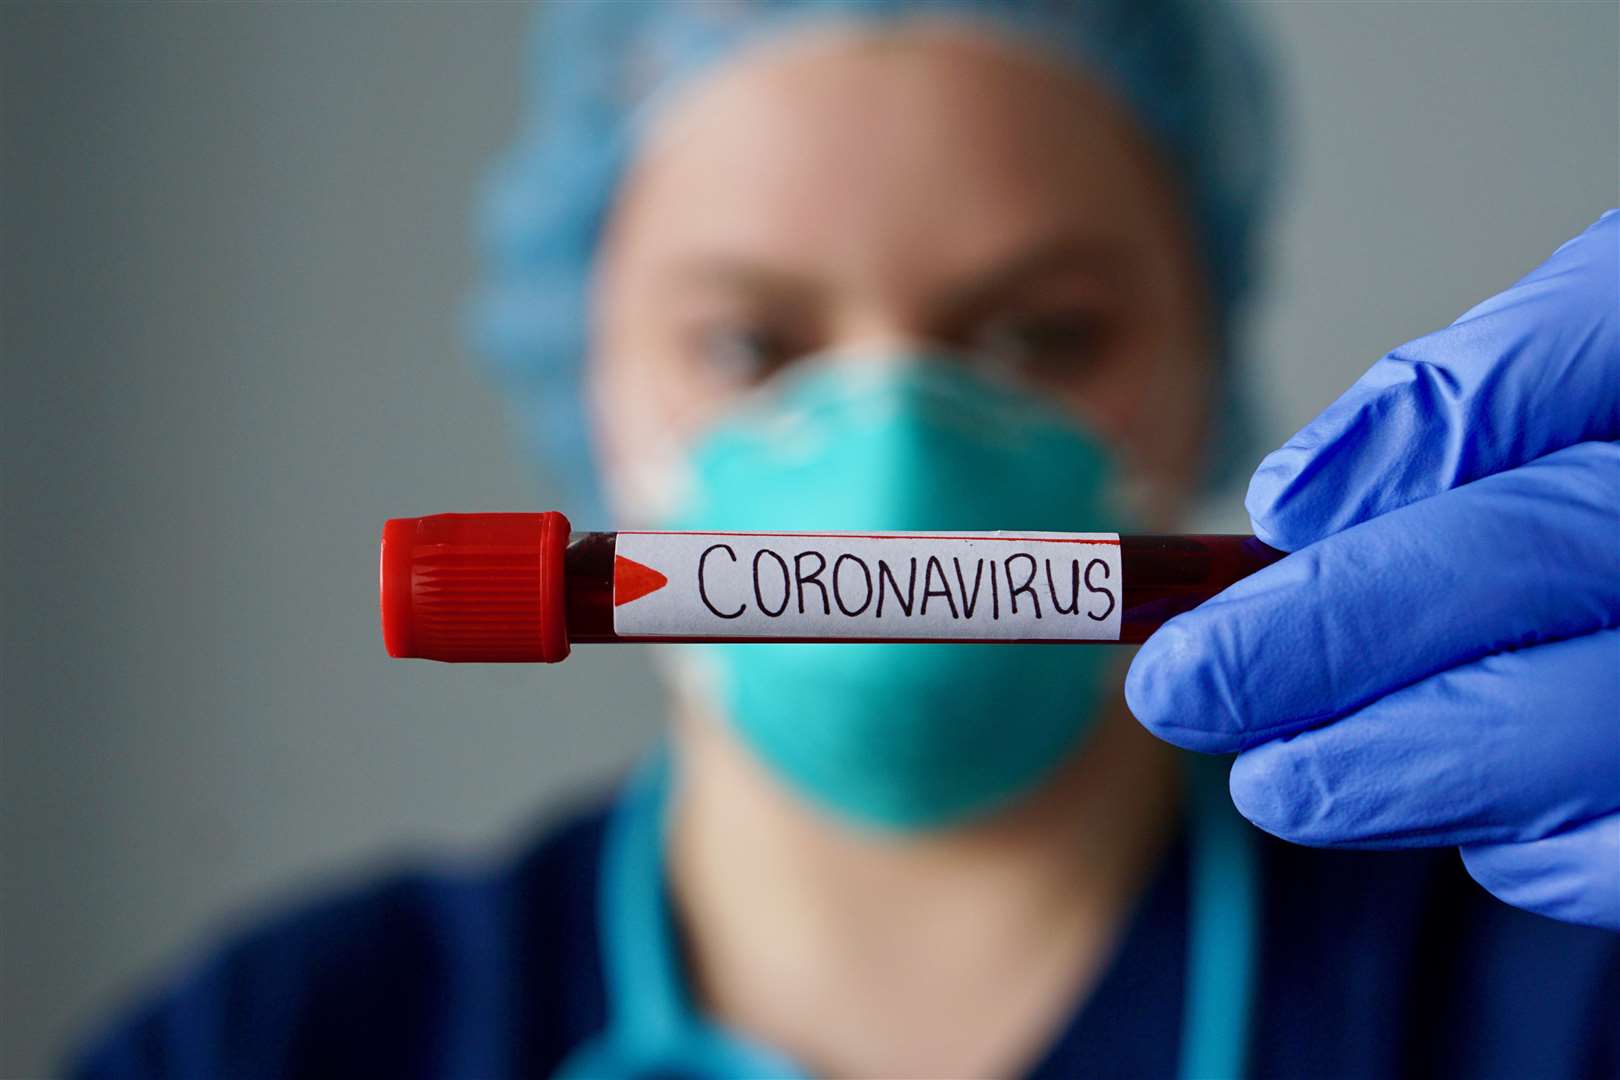 Coronavirus, originated in Wuhan, China